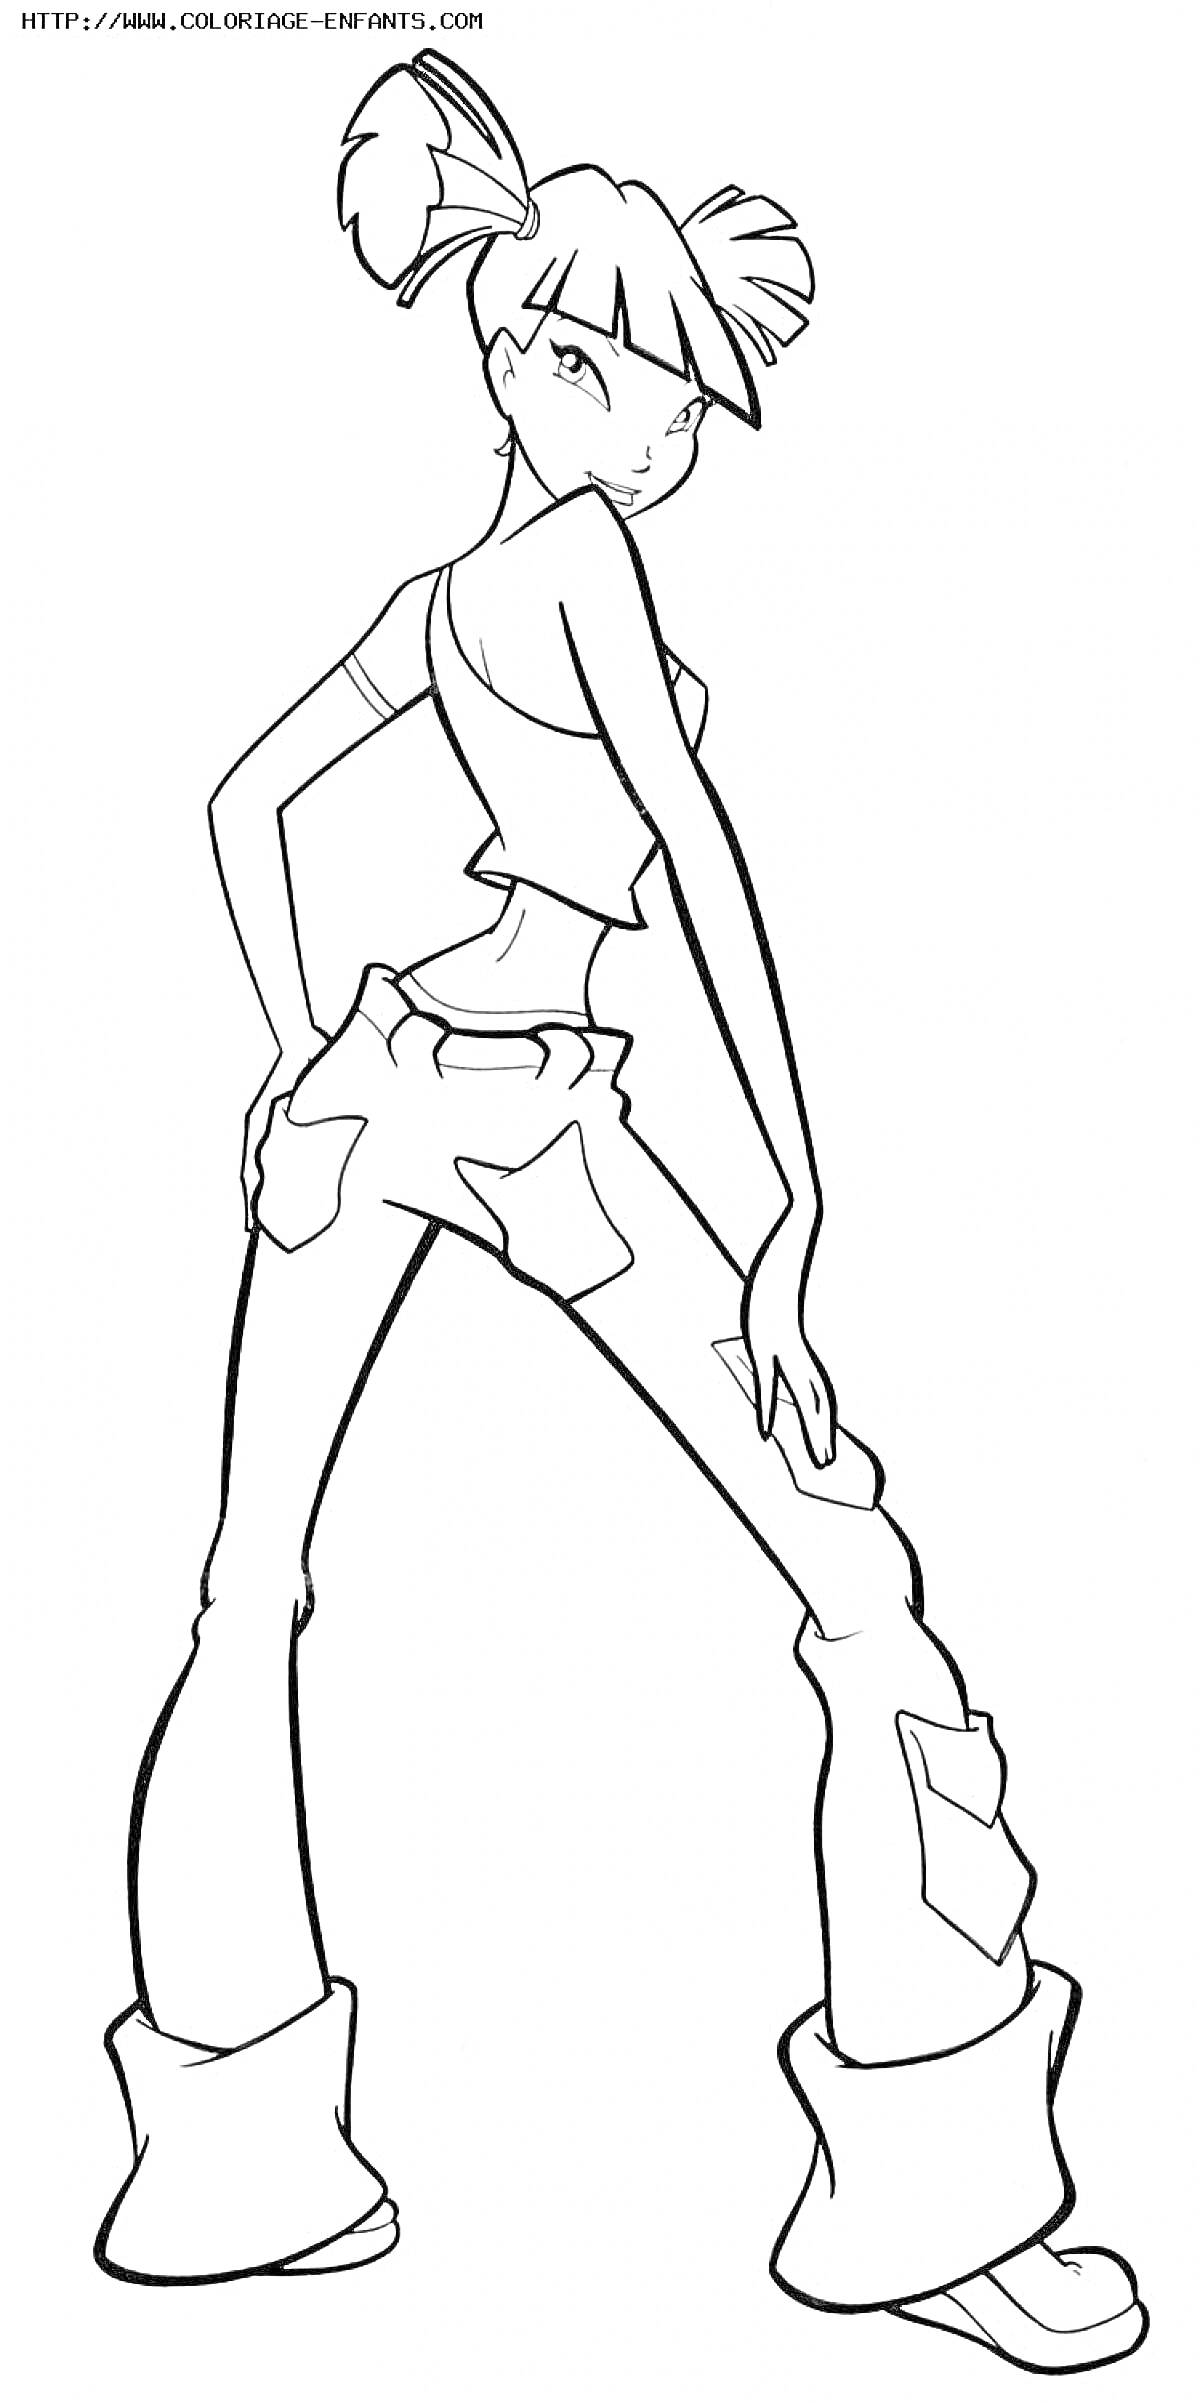 Раскраска Винкс Муза с хвостиками, в топе и широких брюках с карманами